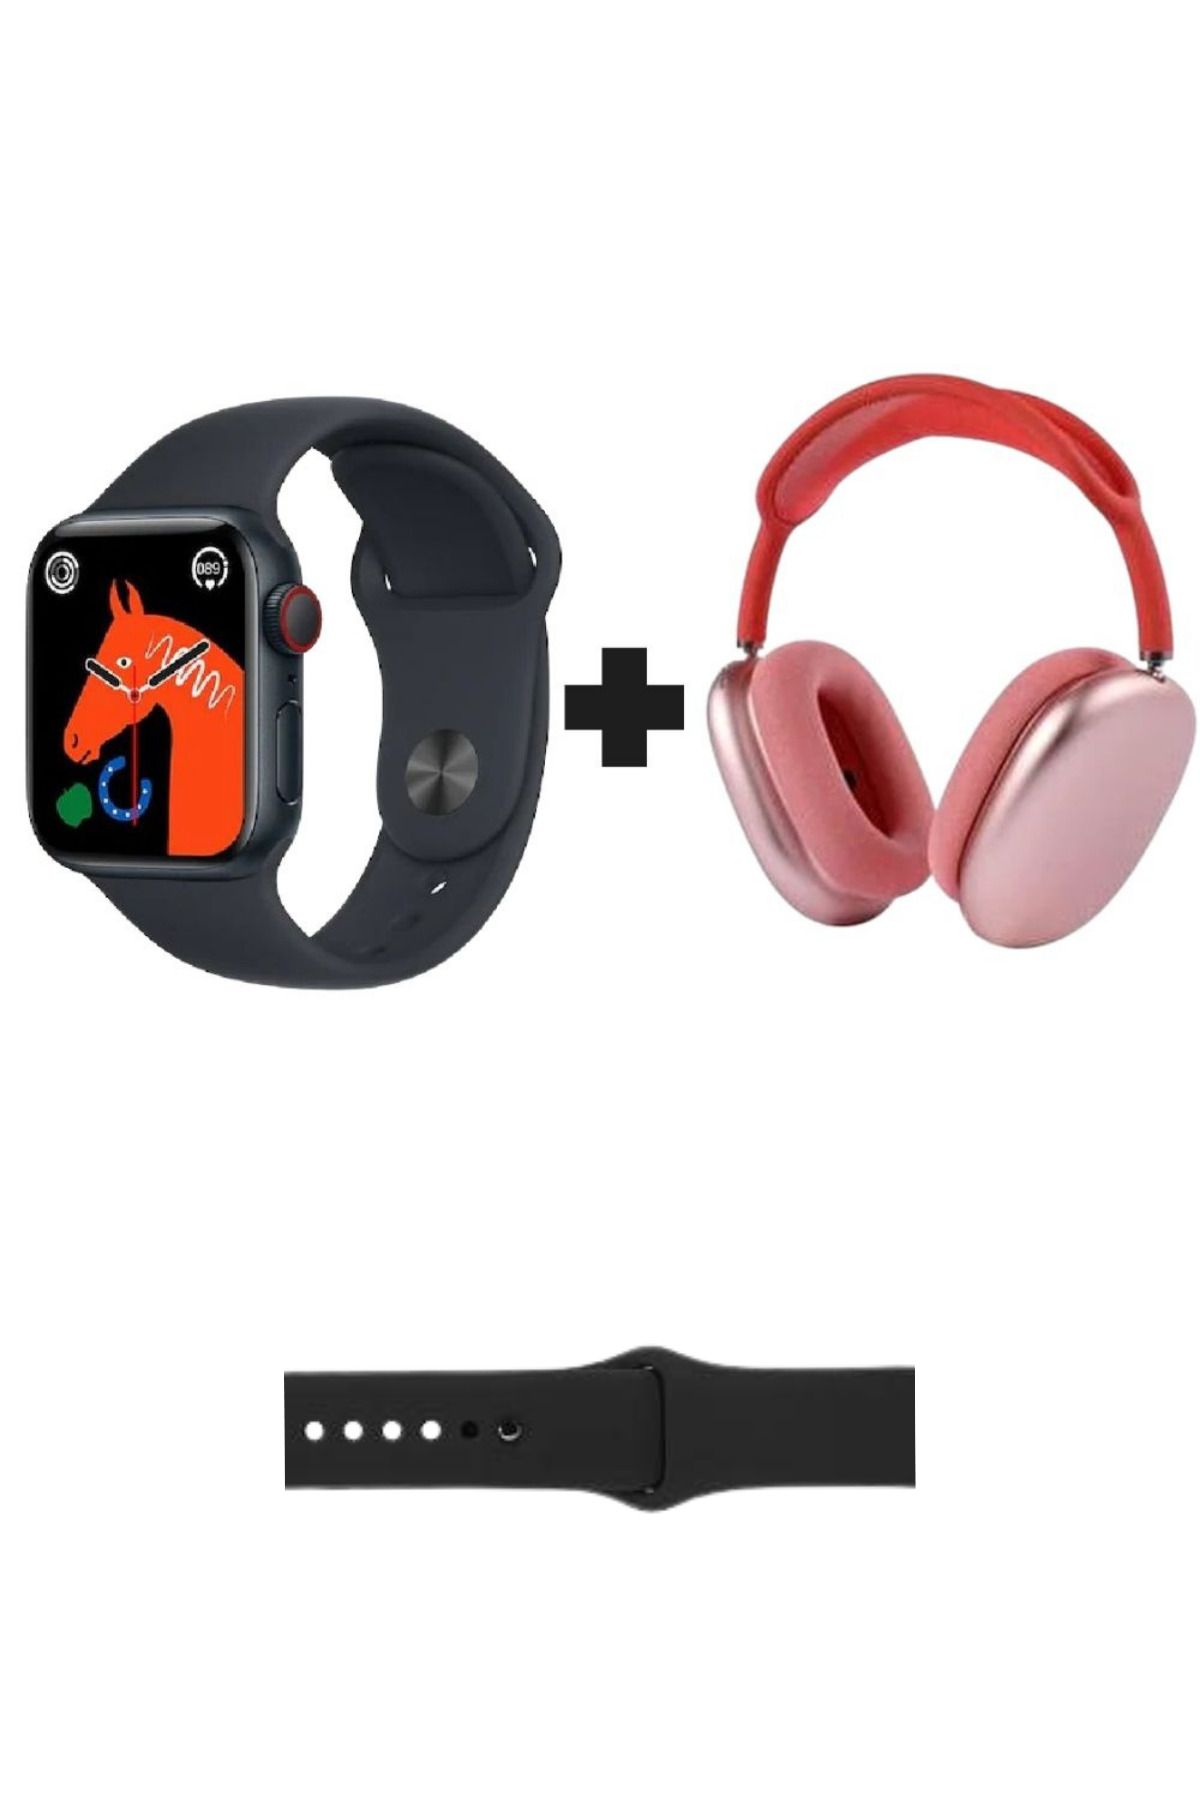 GoMarkt Watch 8 Series Akıllı Saat + P9 Bluetoothlu Kulaküstü Kulaklık İkili Paket Ekstra Kordon Hediyeli